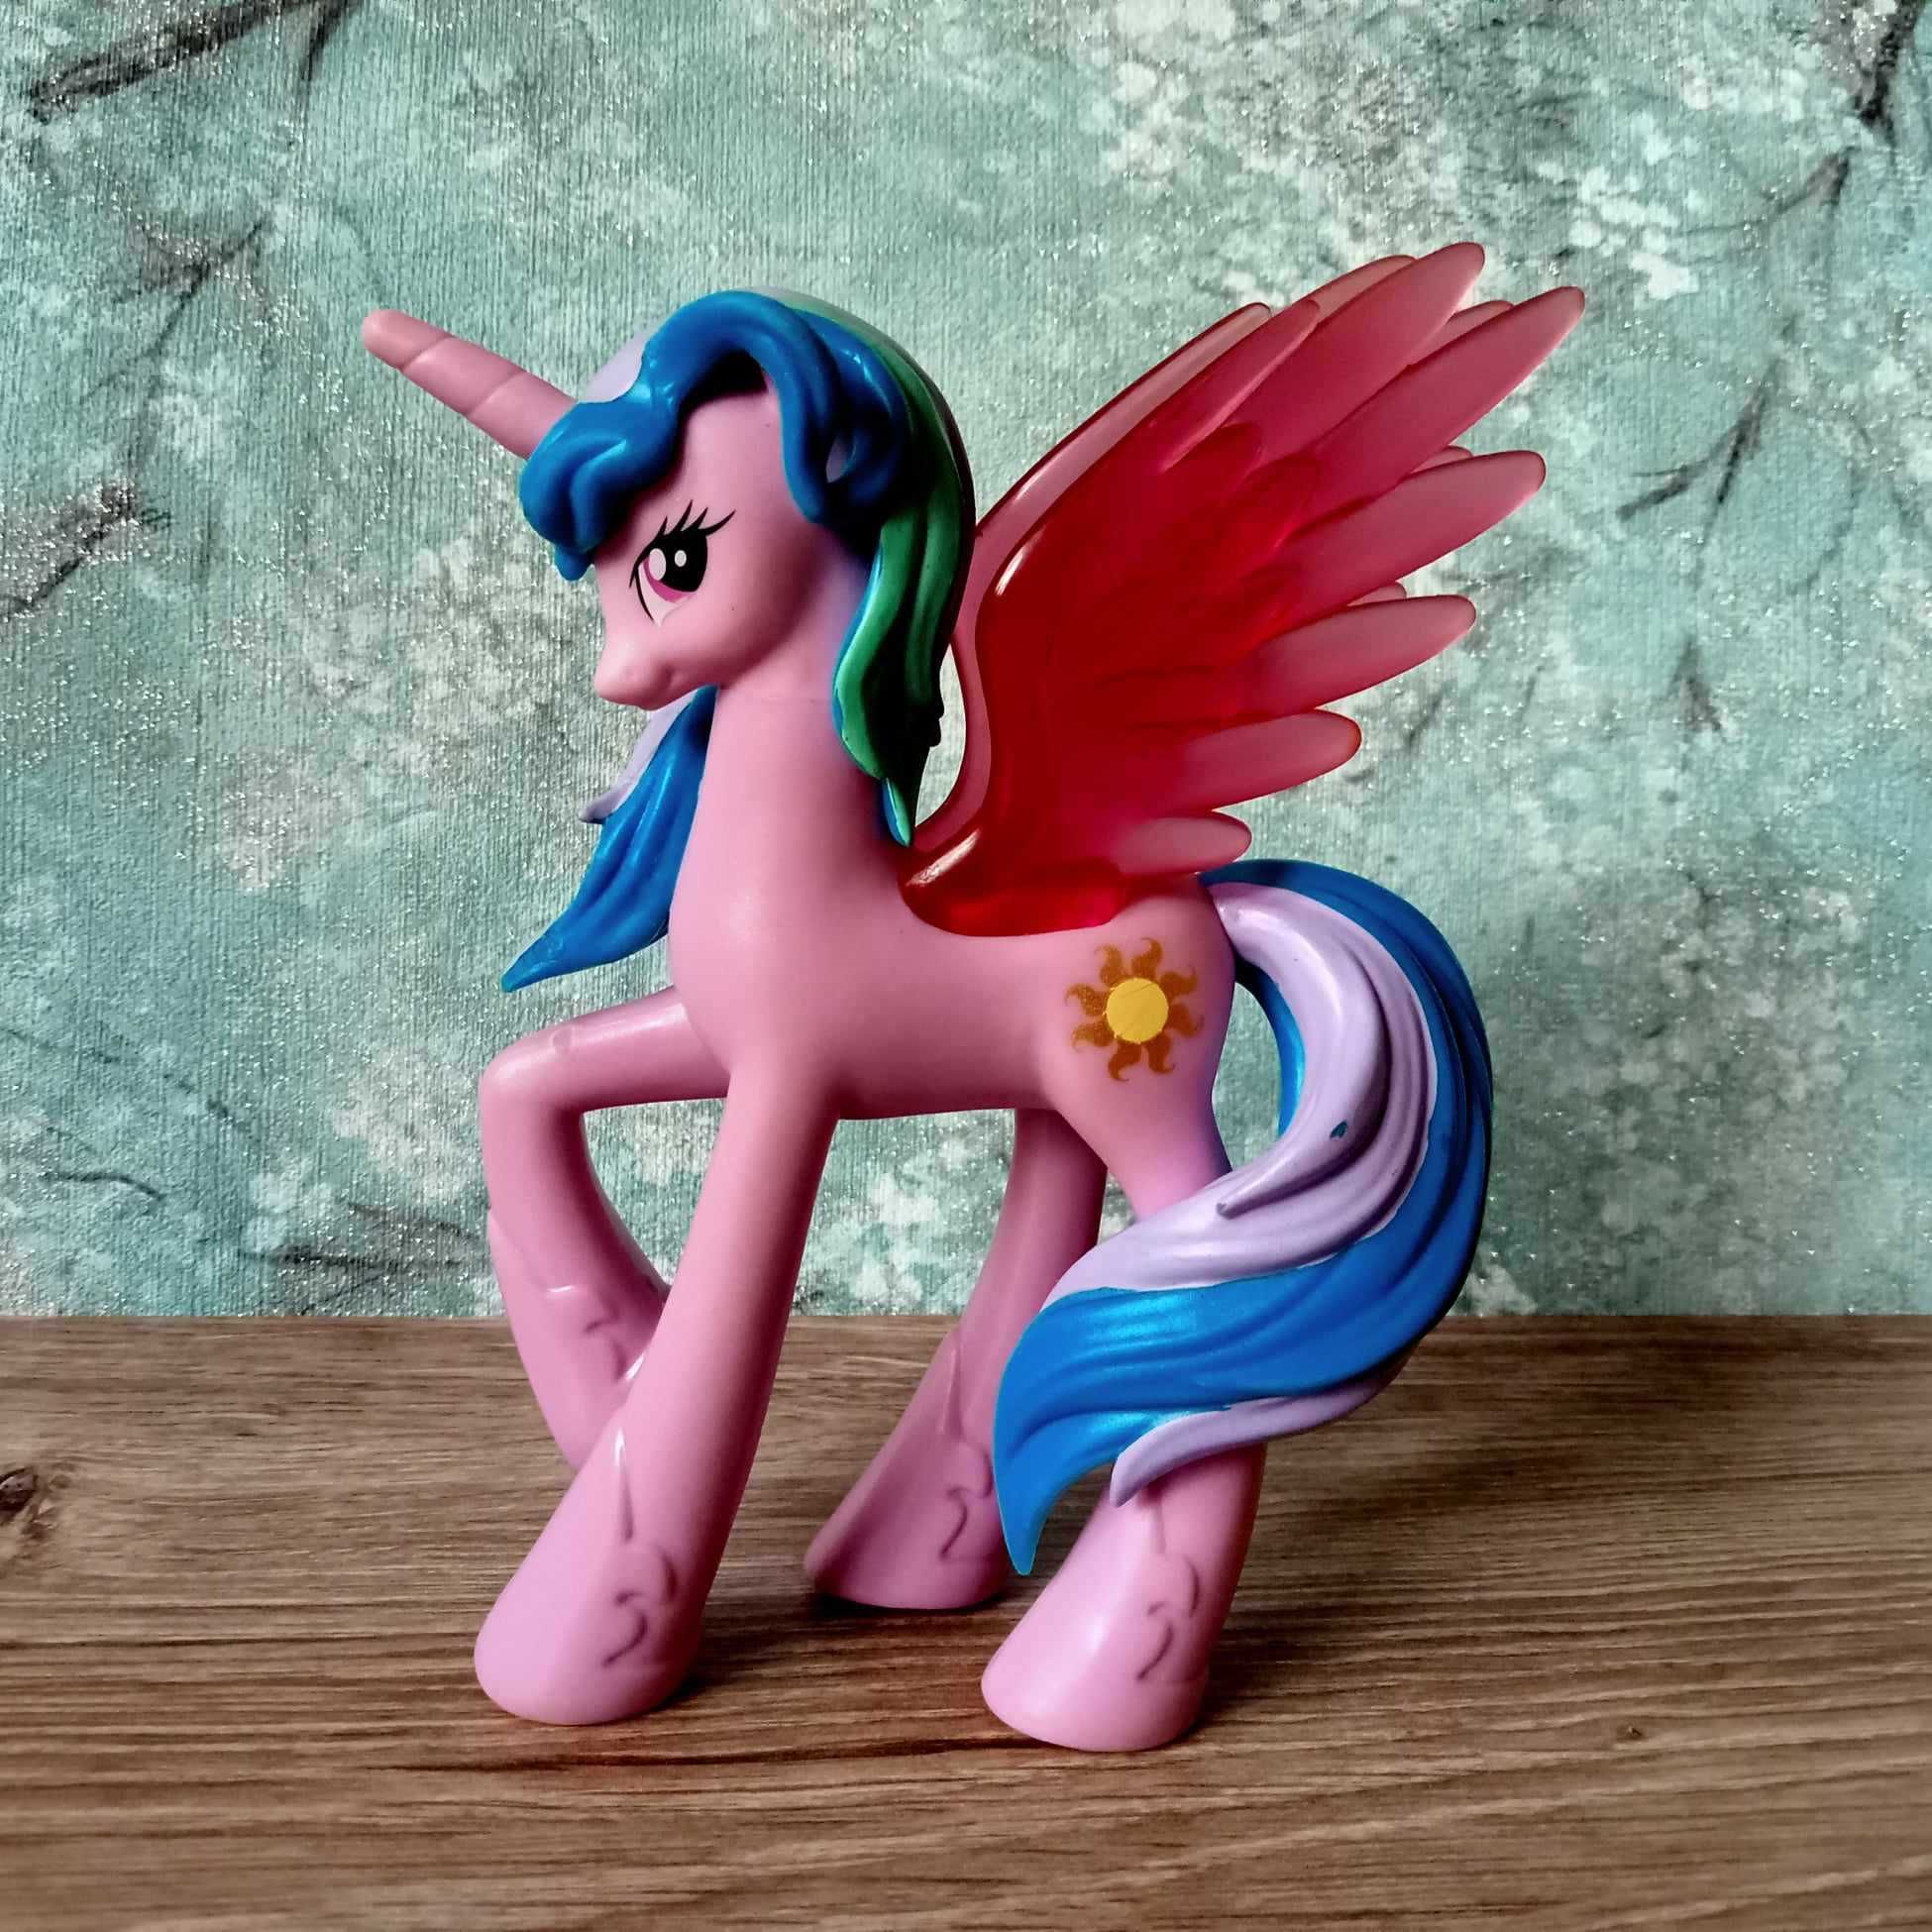 Princess Celestia, 13 cm księżniczka z bajki My Little Pony